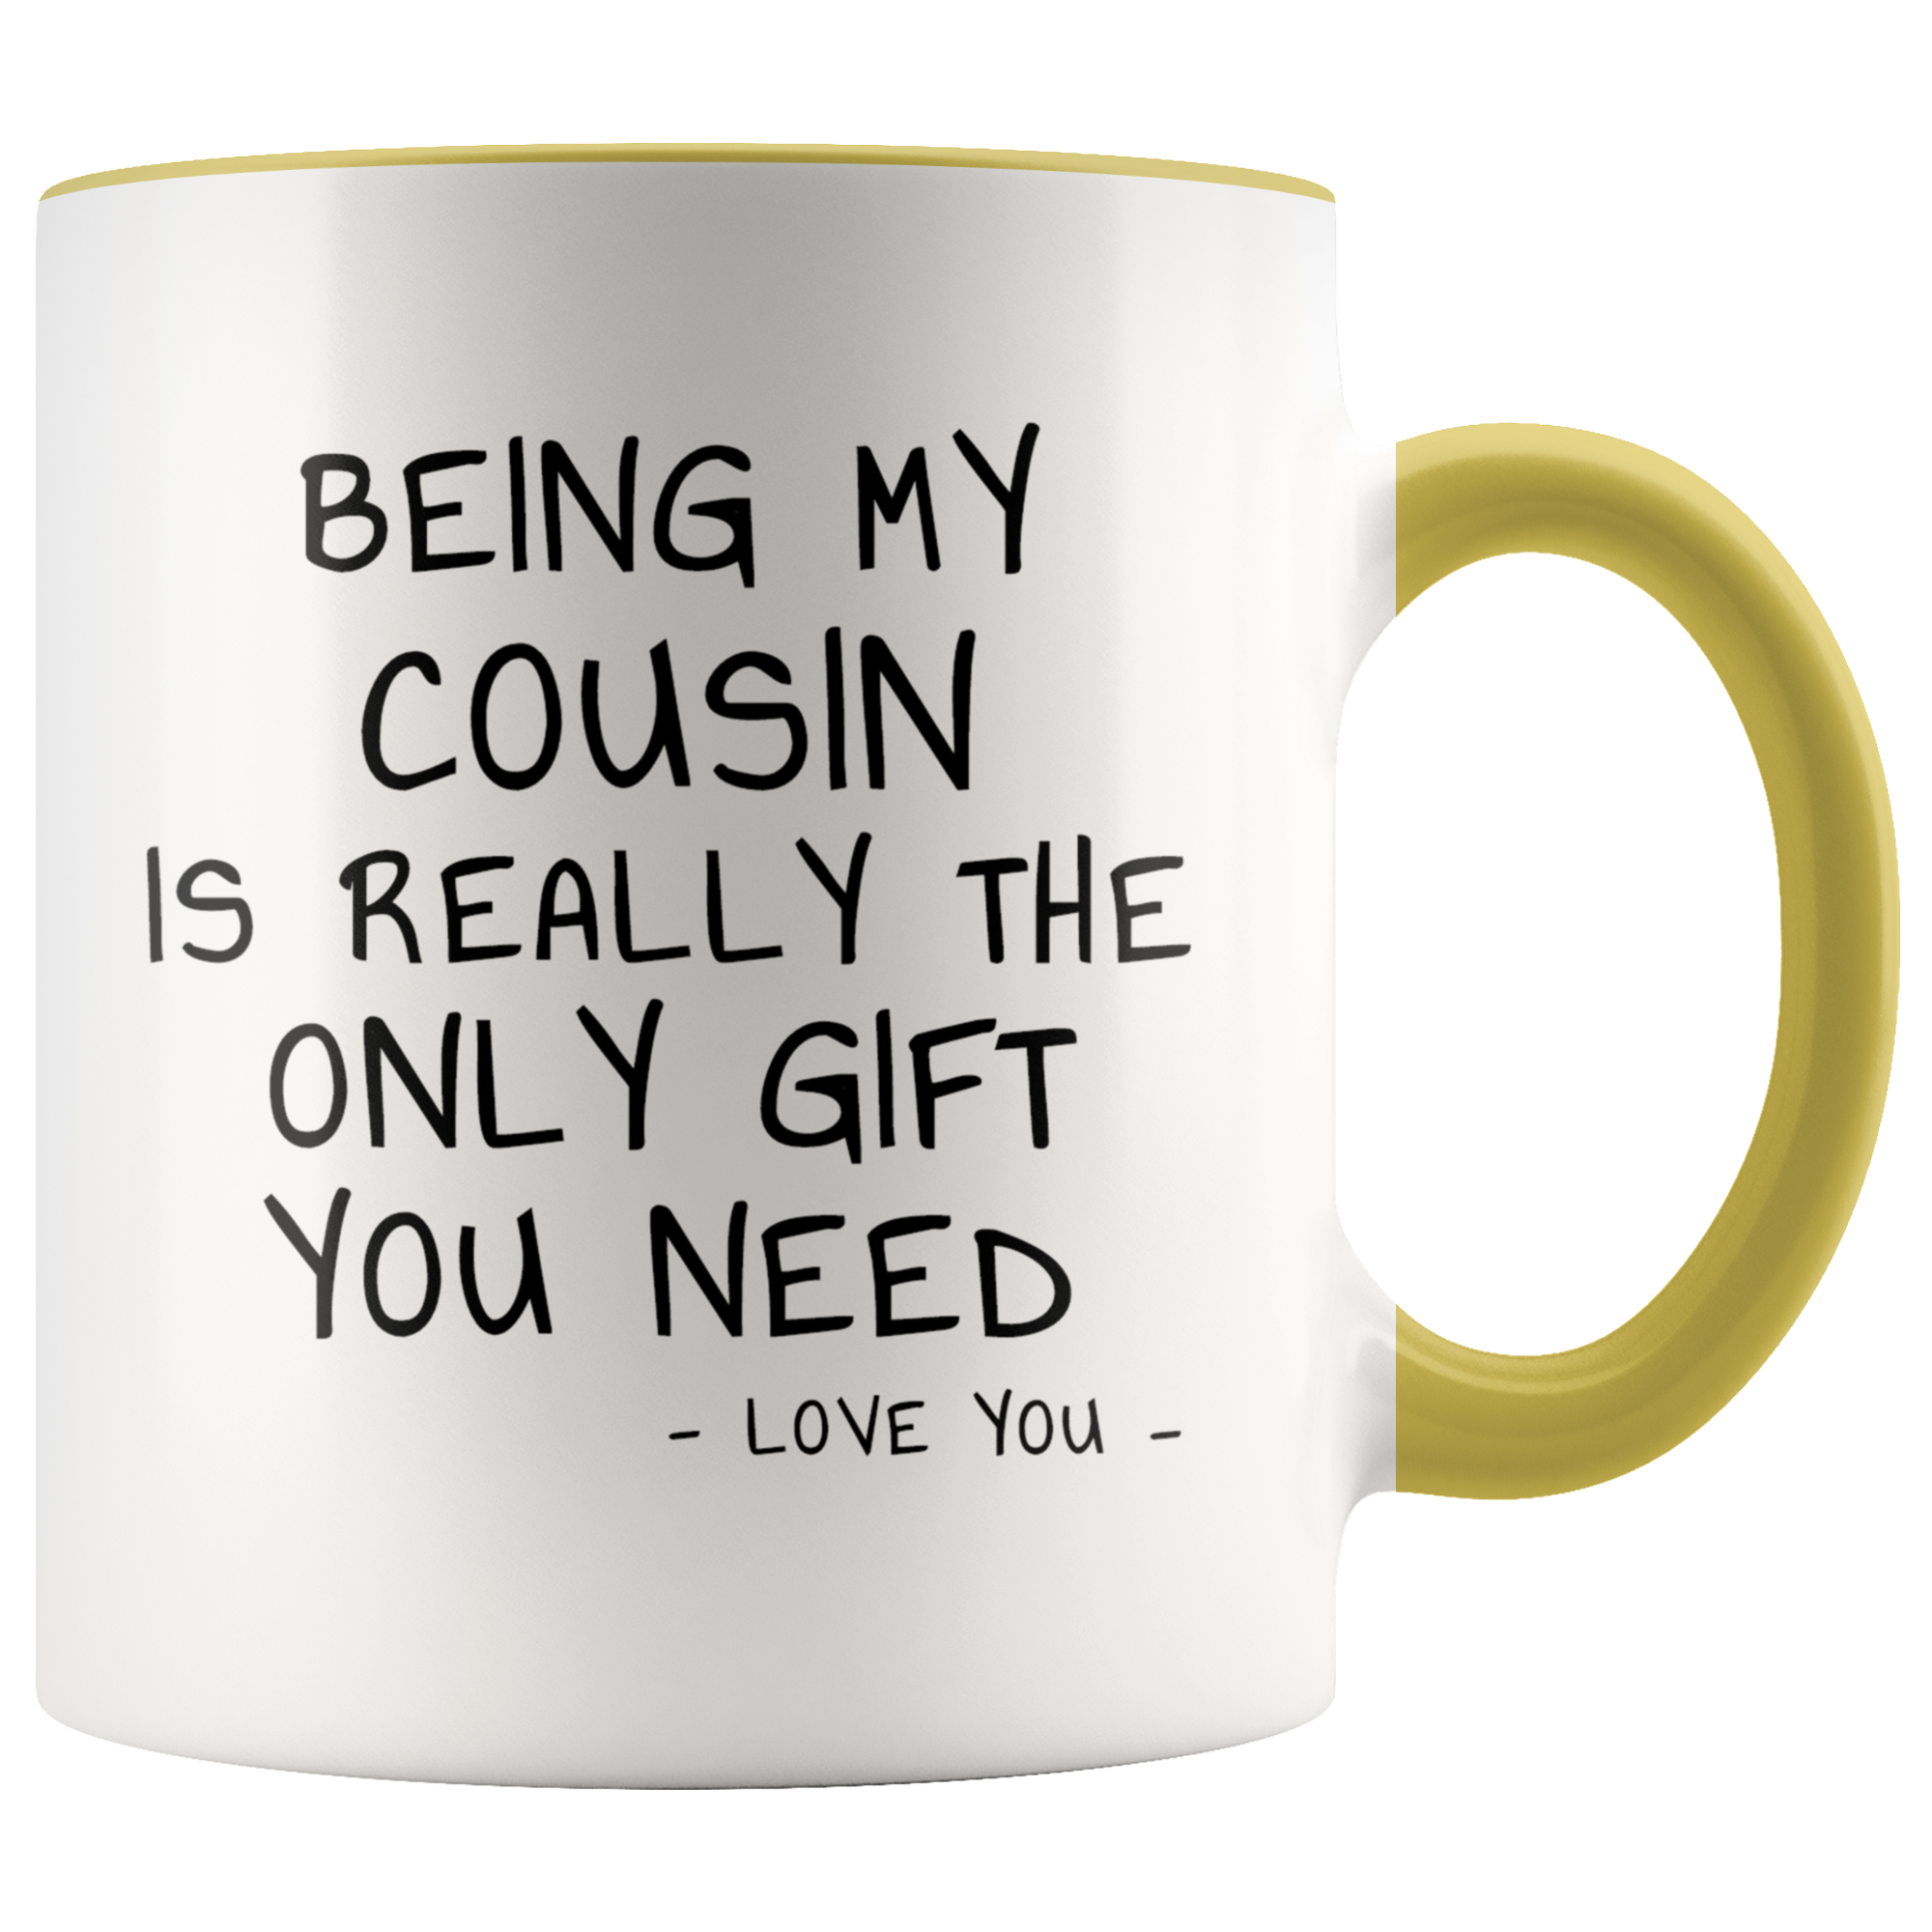 Funny Cousin Mug